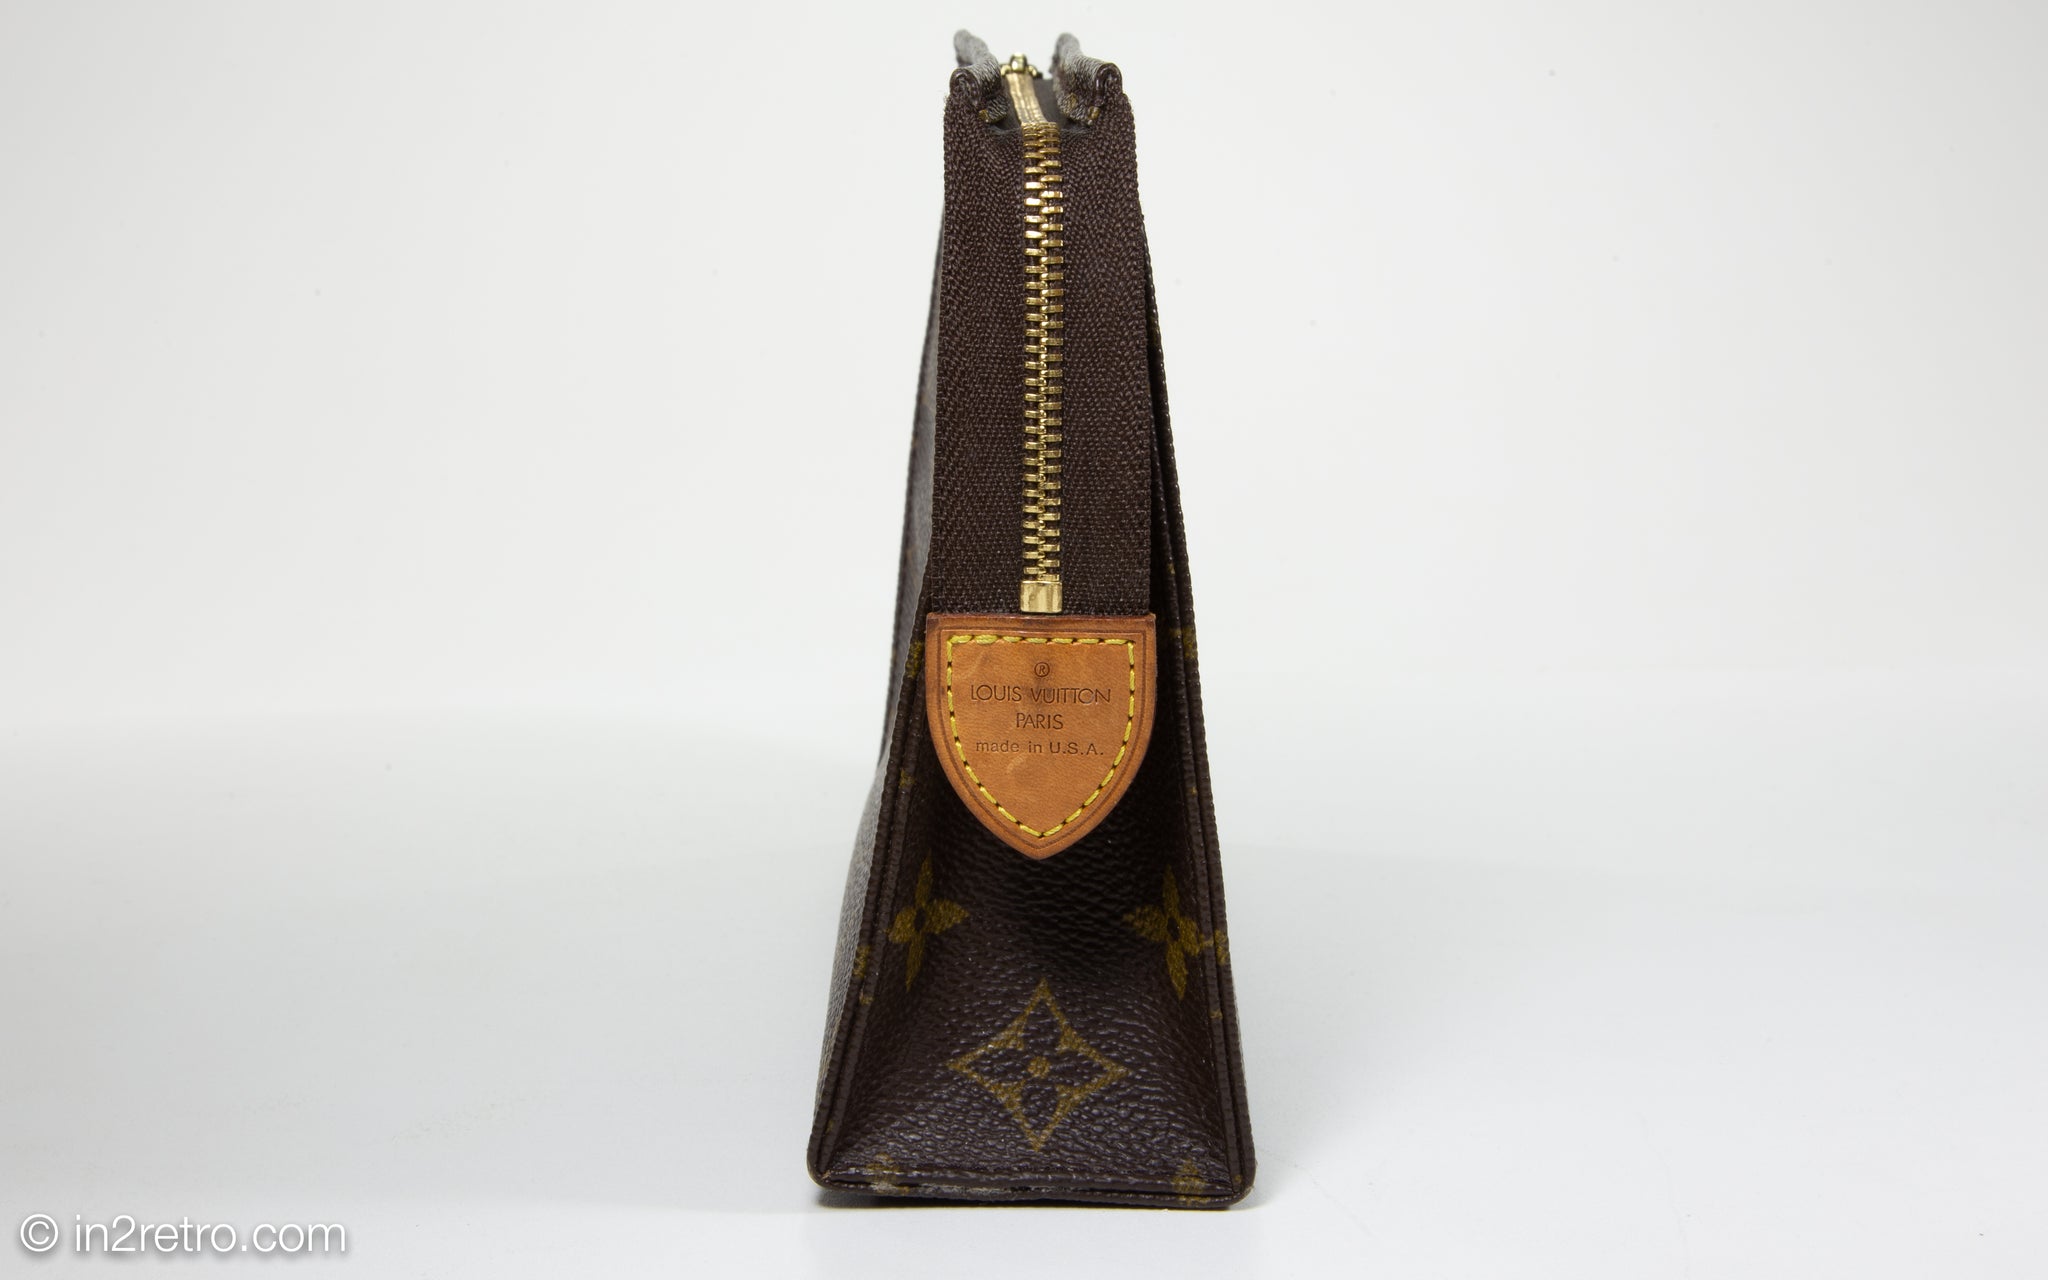 New Authentic Vintage Louis Vuitton Shopping Bag